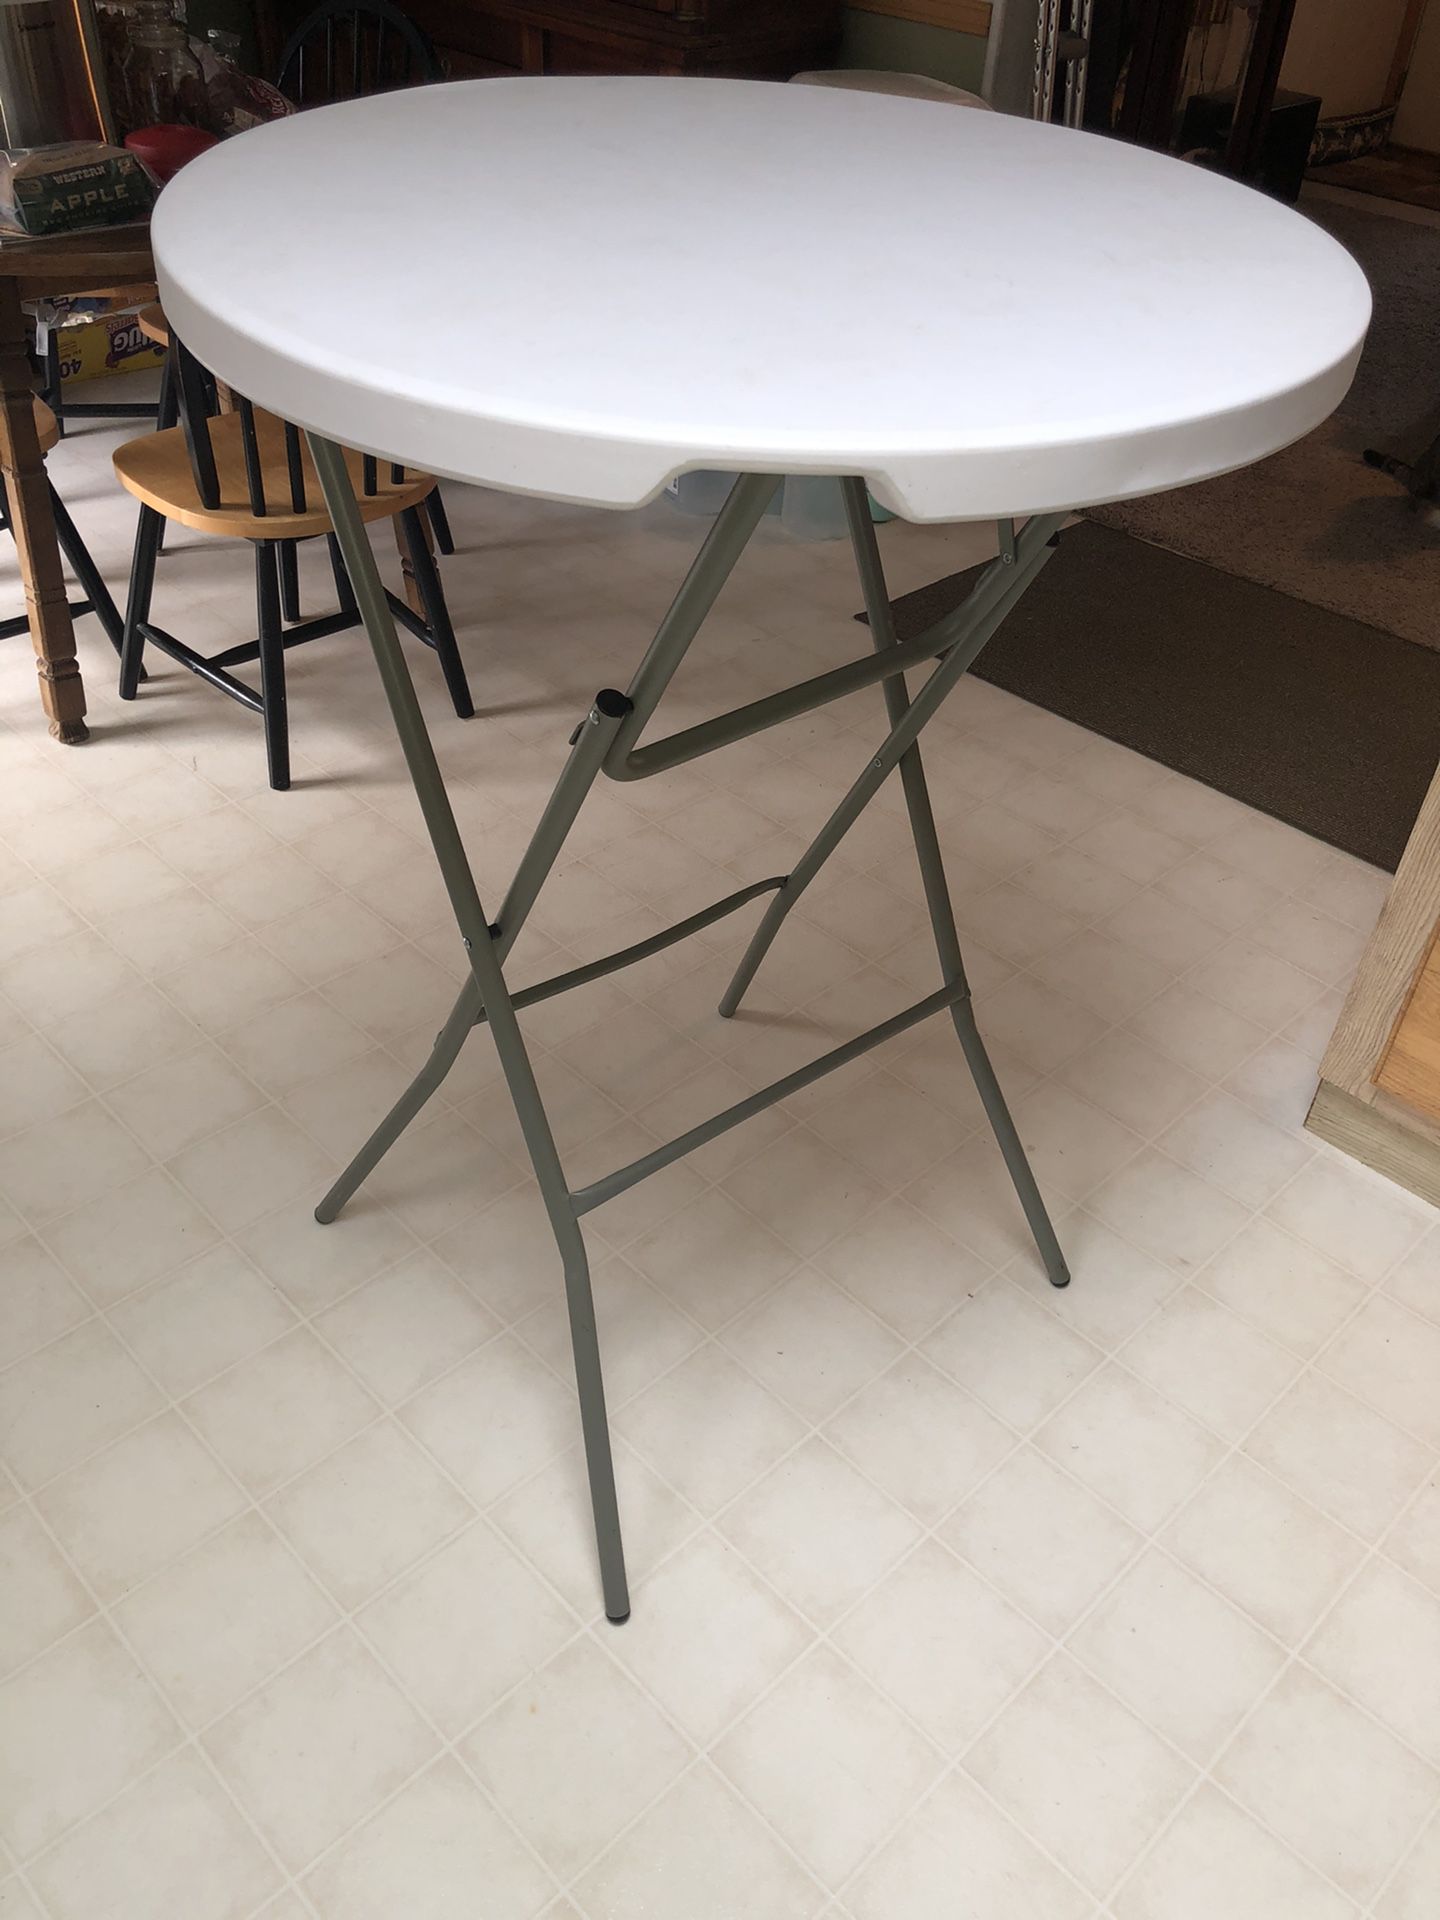 3ft - Round Granite White Plastic Bar Height Folding Table